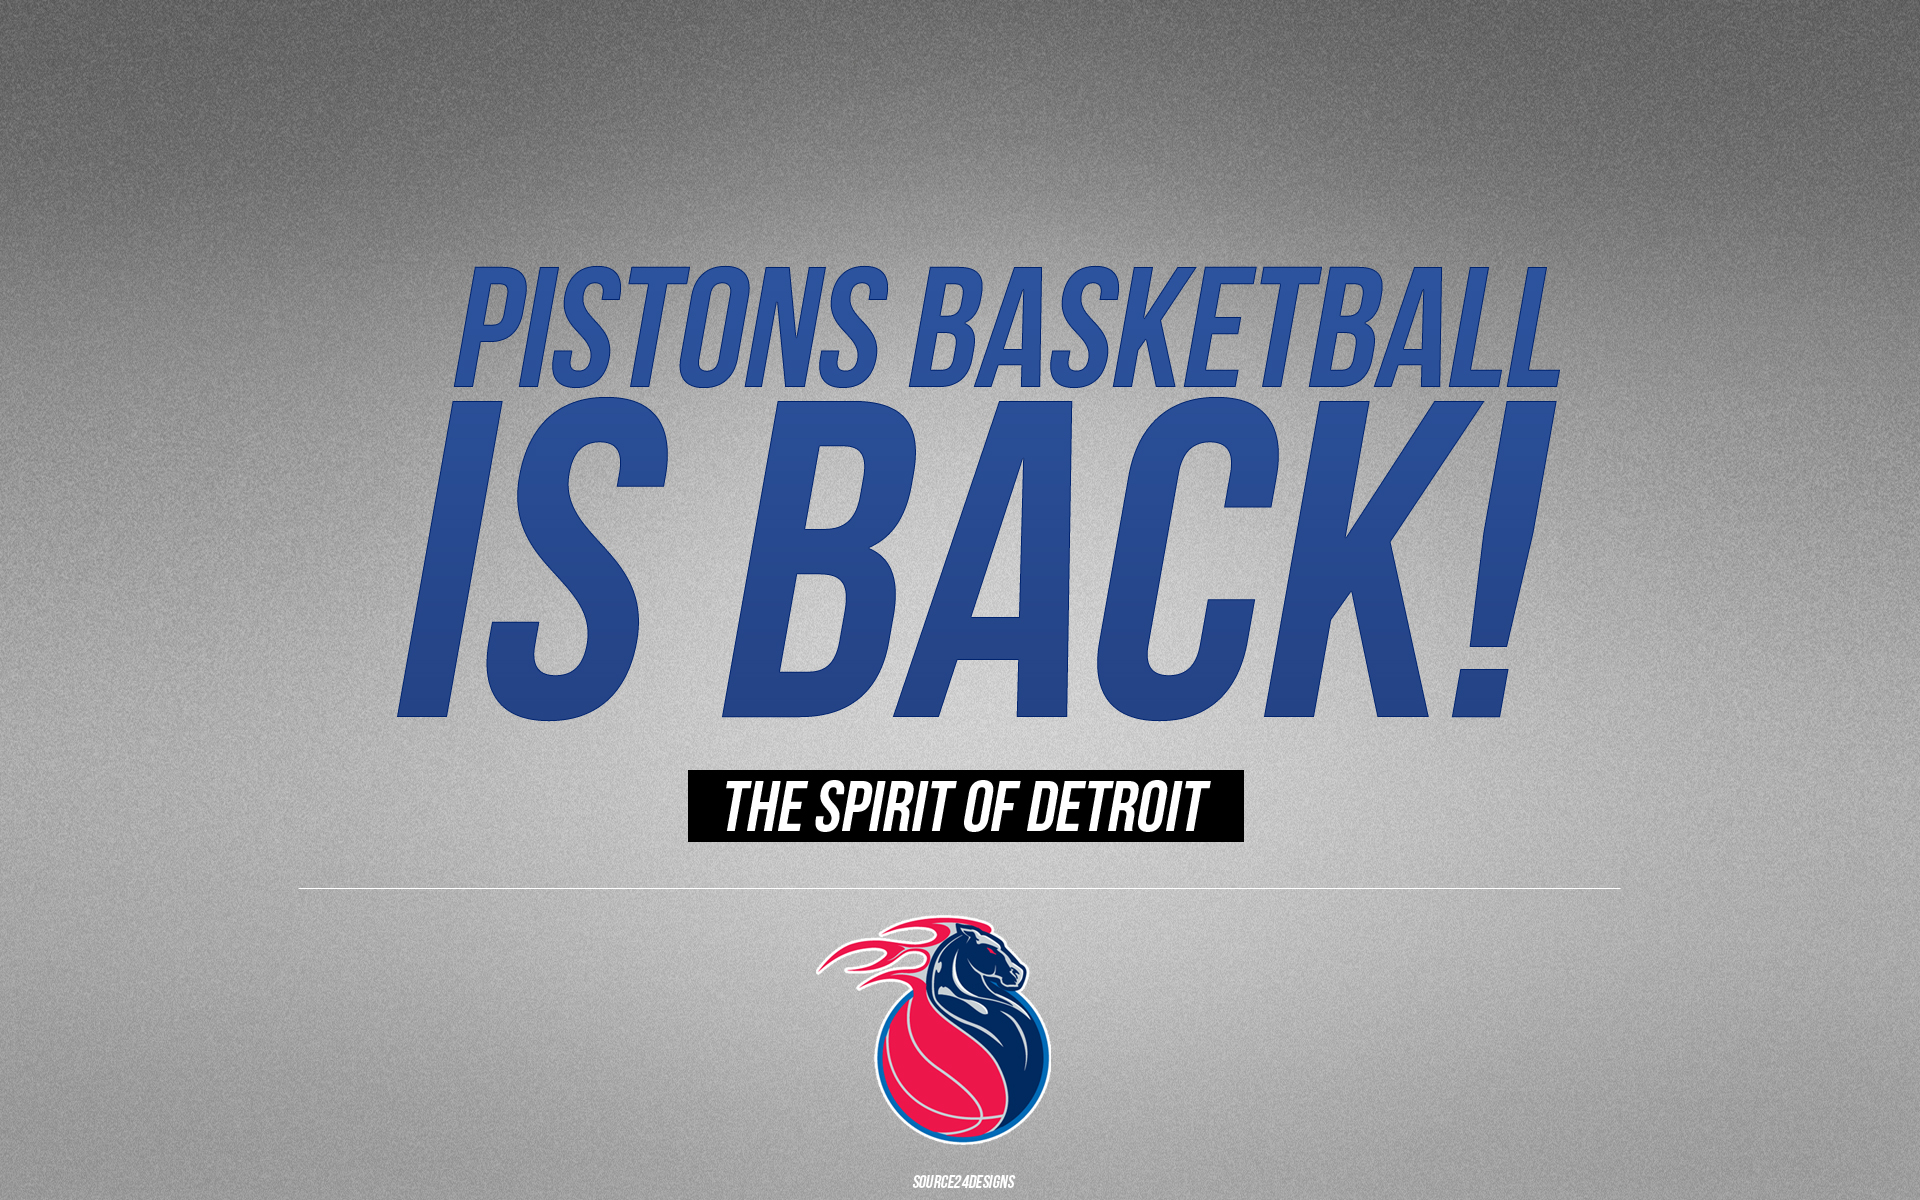 Detroit Pistons Wallpaper Background